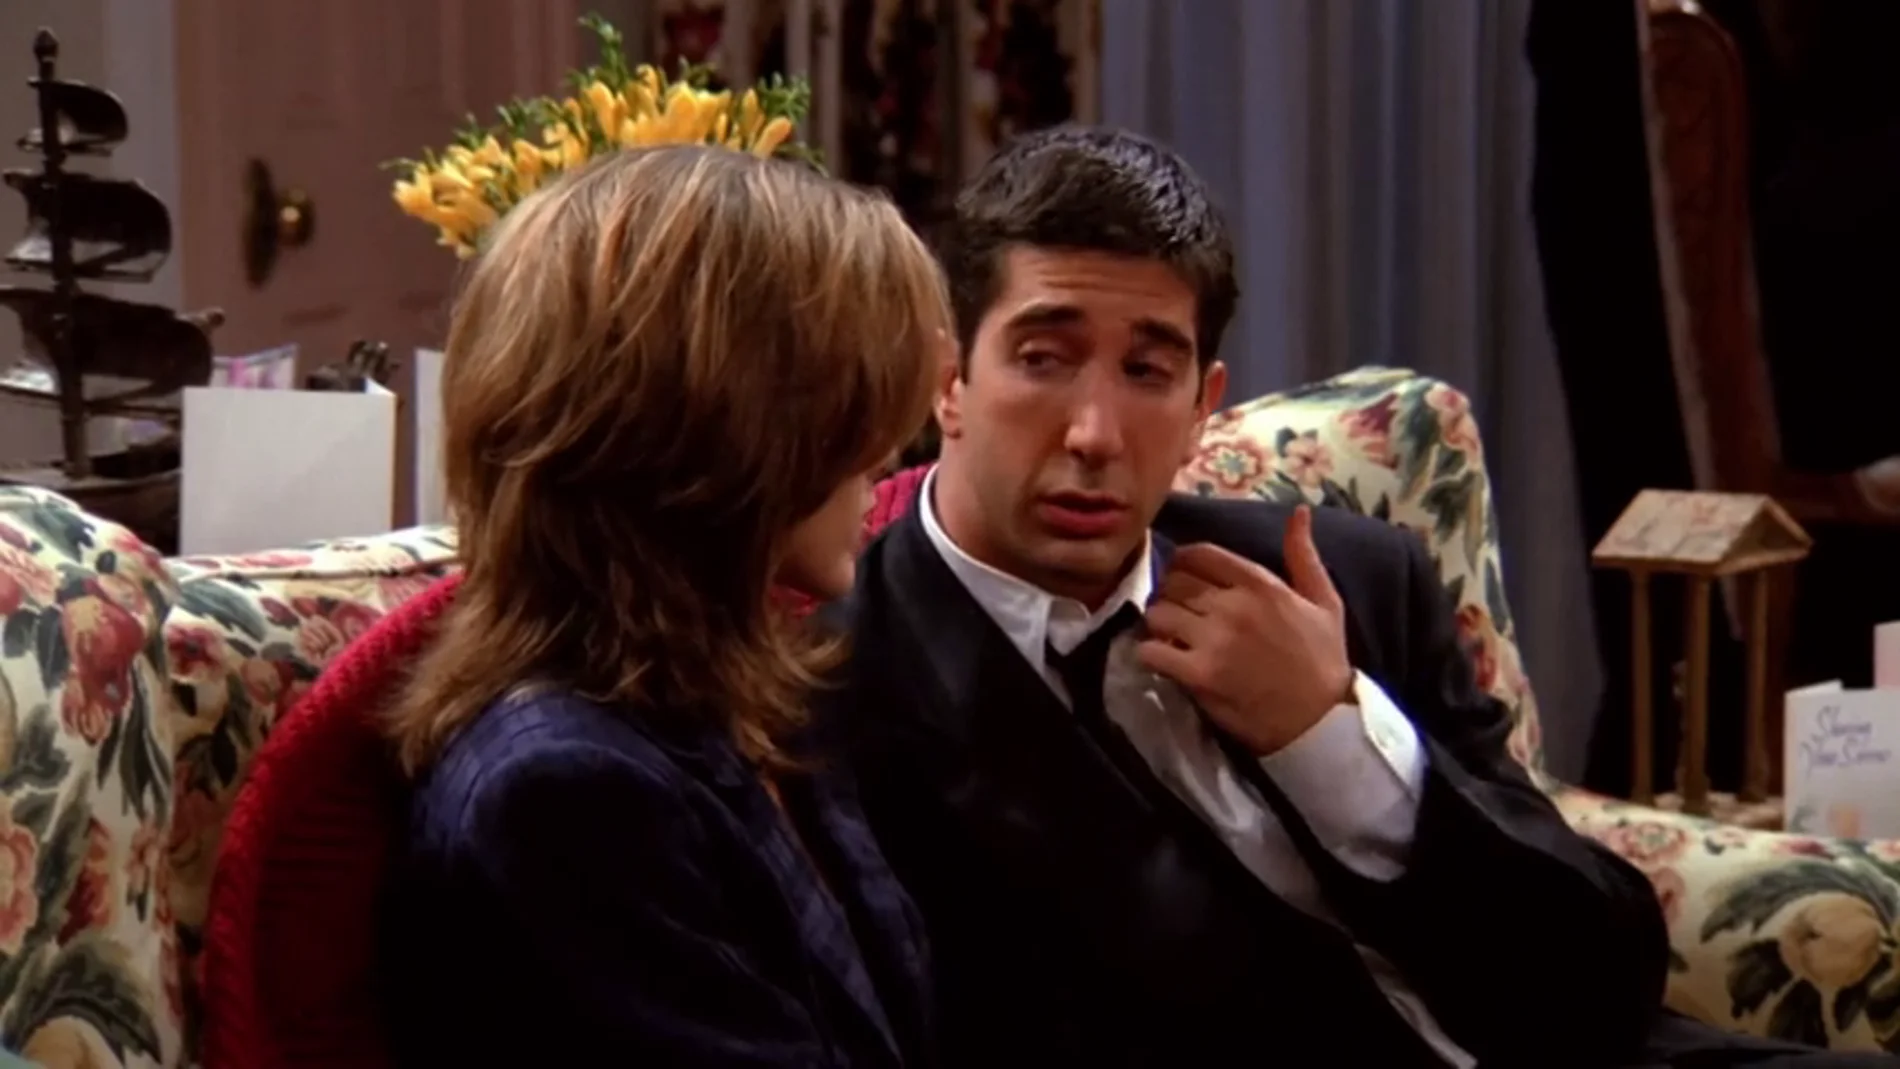 Ross: "Rachel, te quiero más que a nadie"